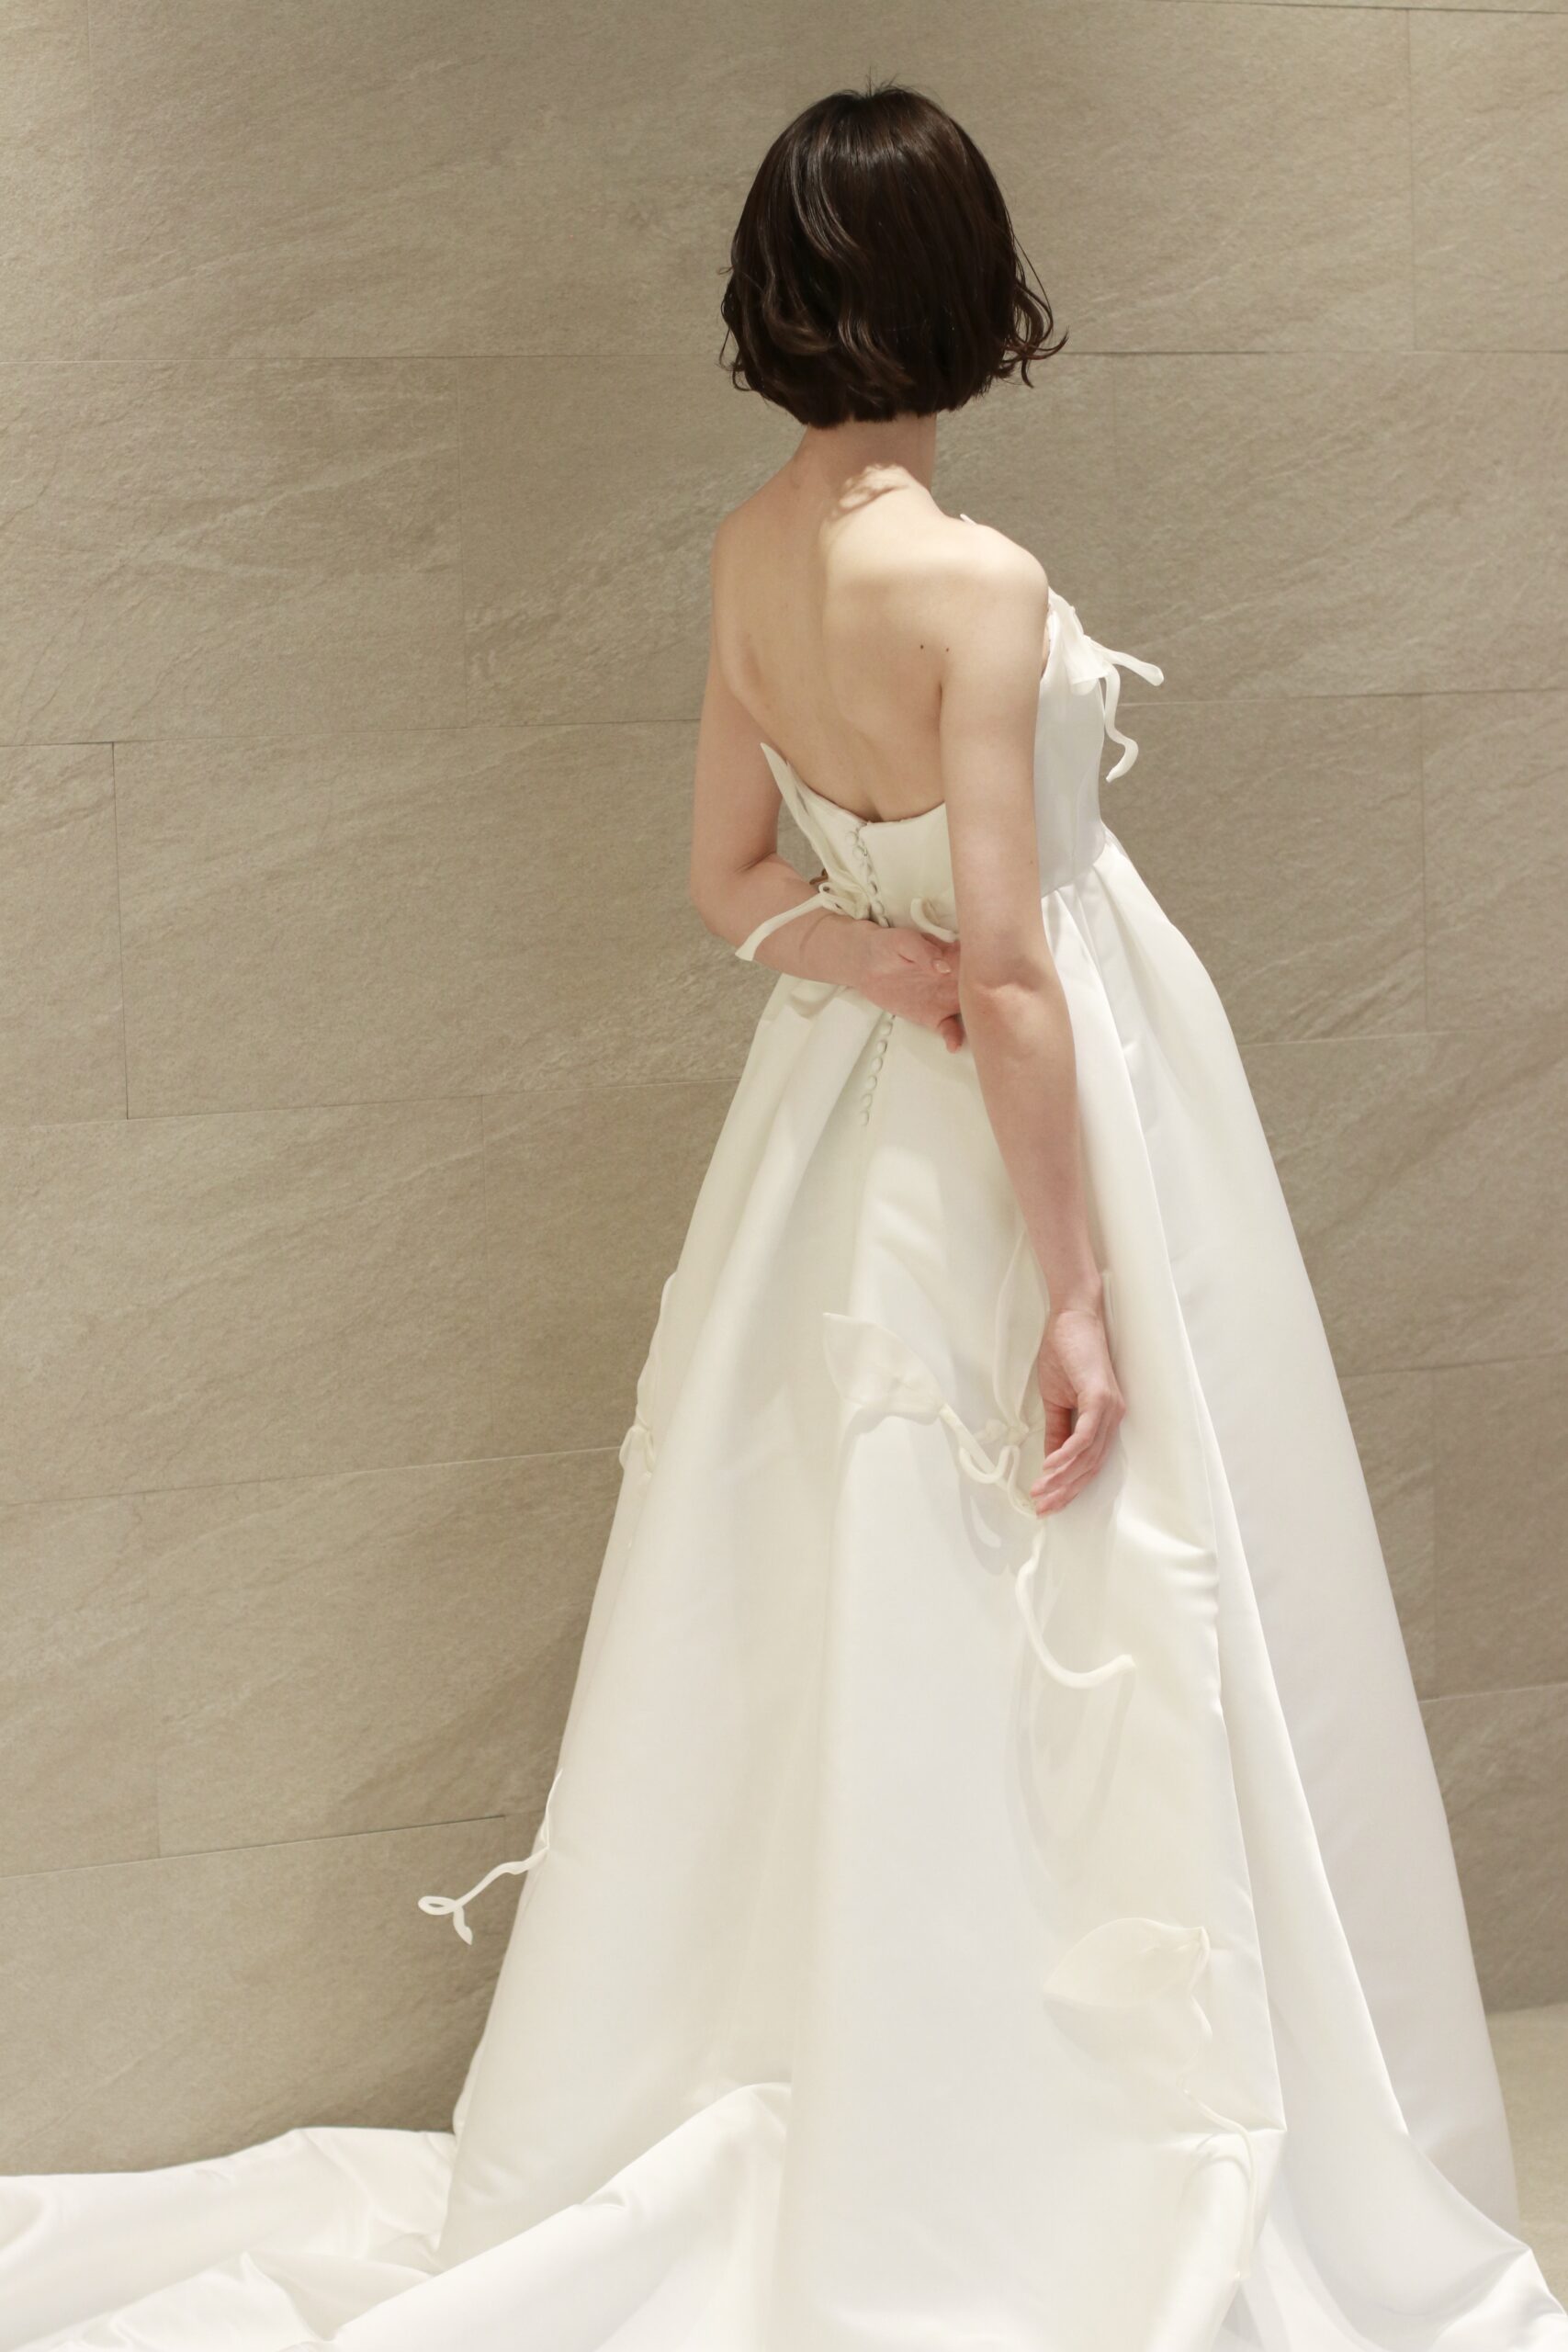  骨格ナチュラルの花嫁にザトリートドレッシングがおすすめするウェディングドレスは胸下切り替えのエパラインのウェディングドレスです